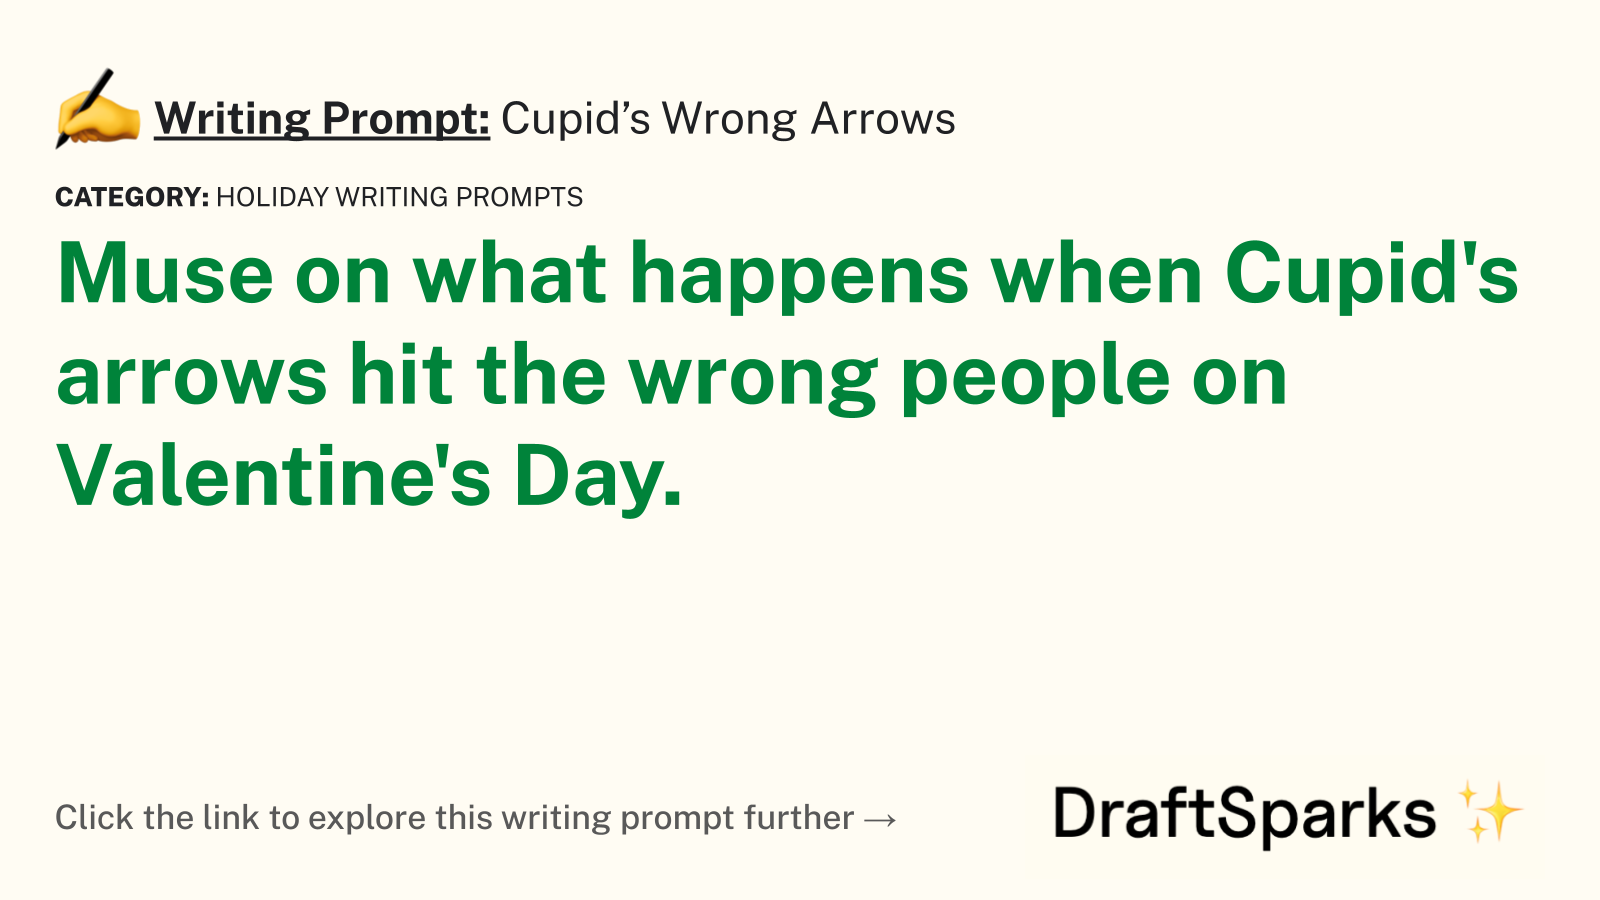 Cupid’s Wrong Arrows